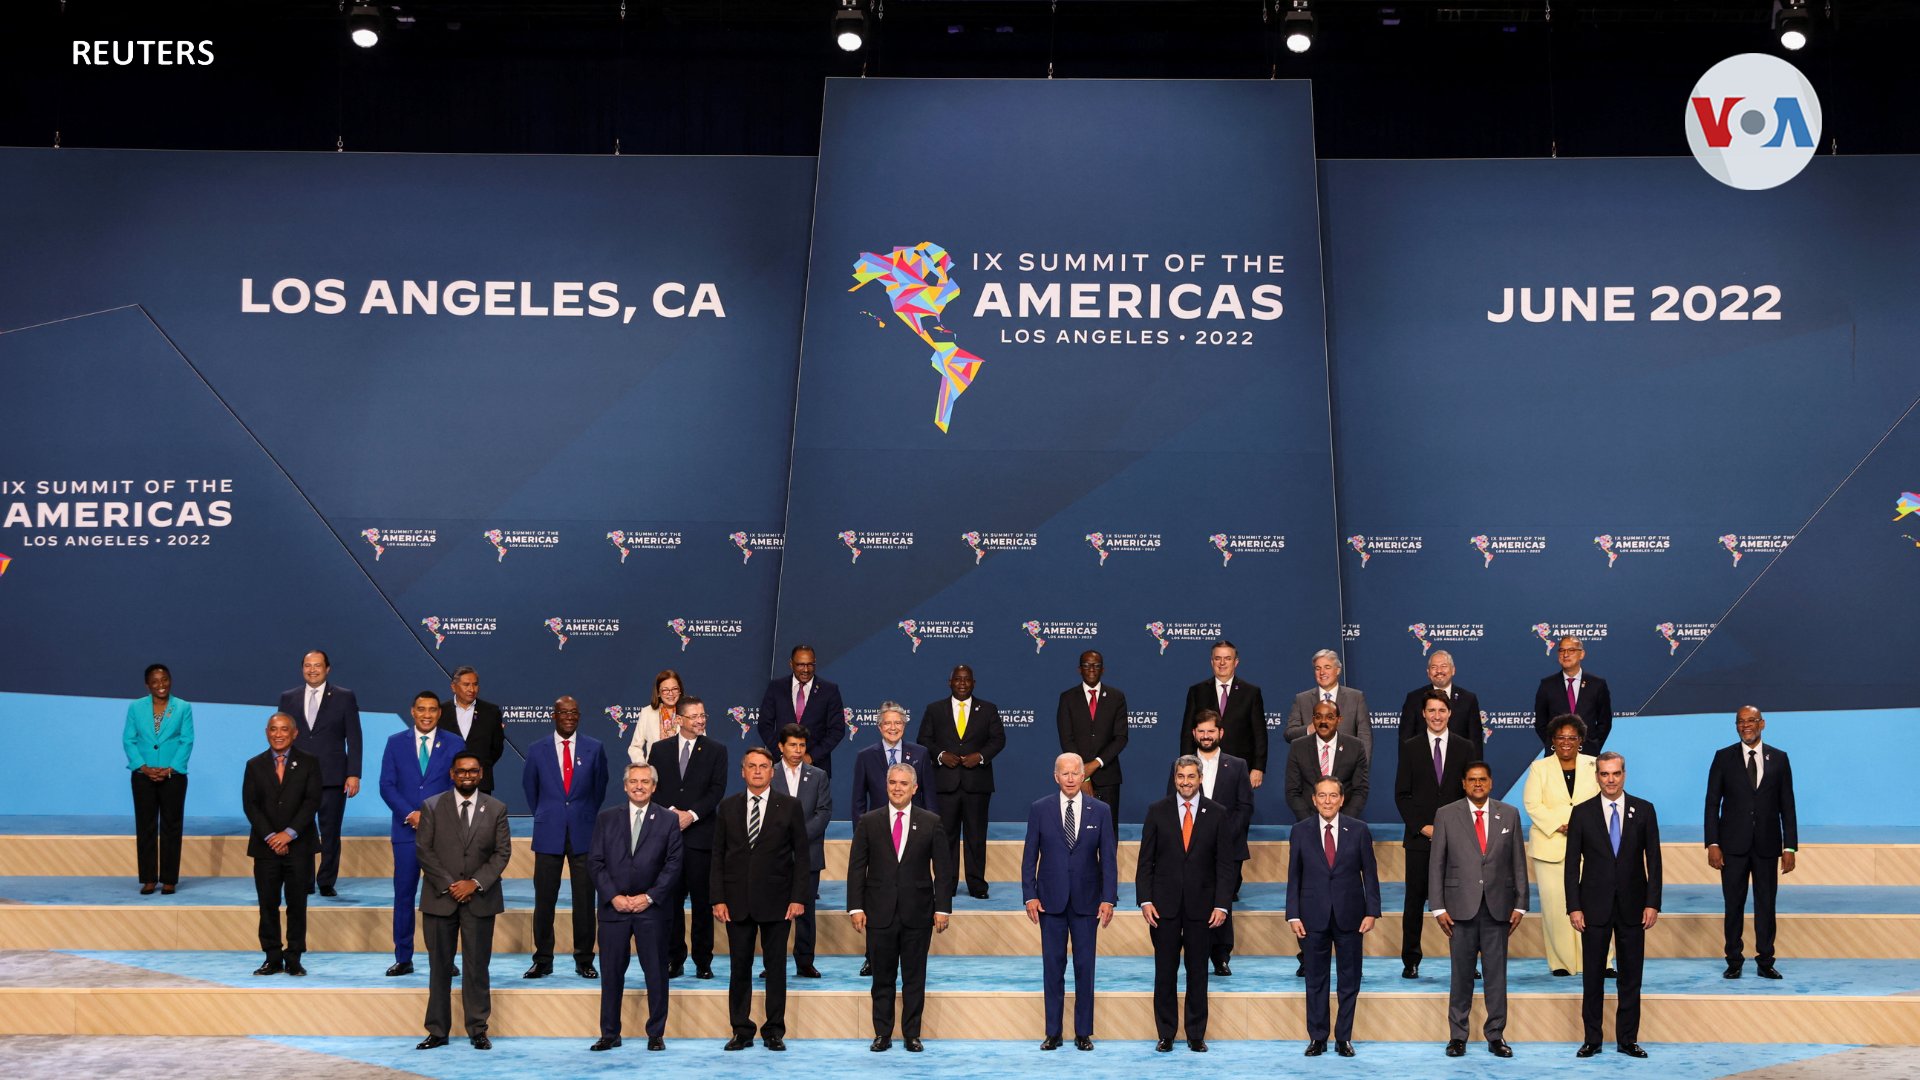 Declaración de Los Ángeles surgió de la IX Cumbre de Las Américas. Foto: VOA / Reuters